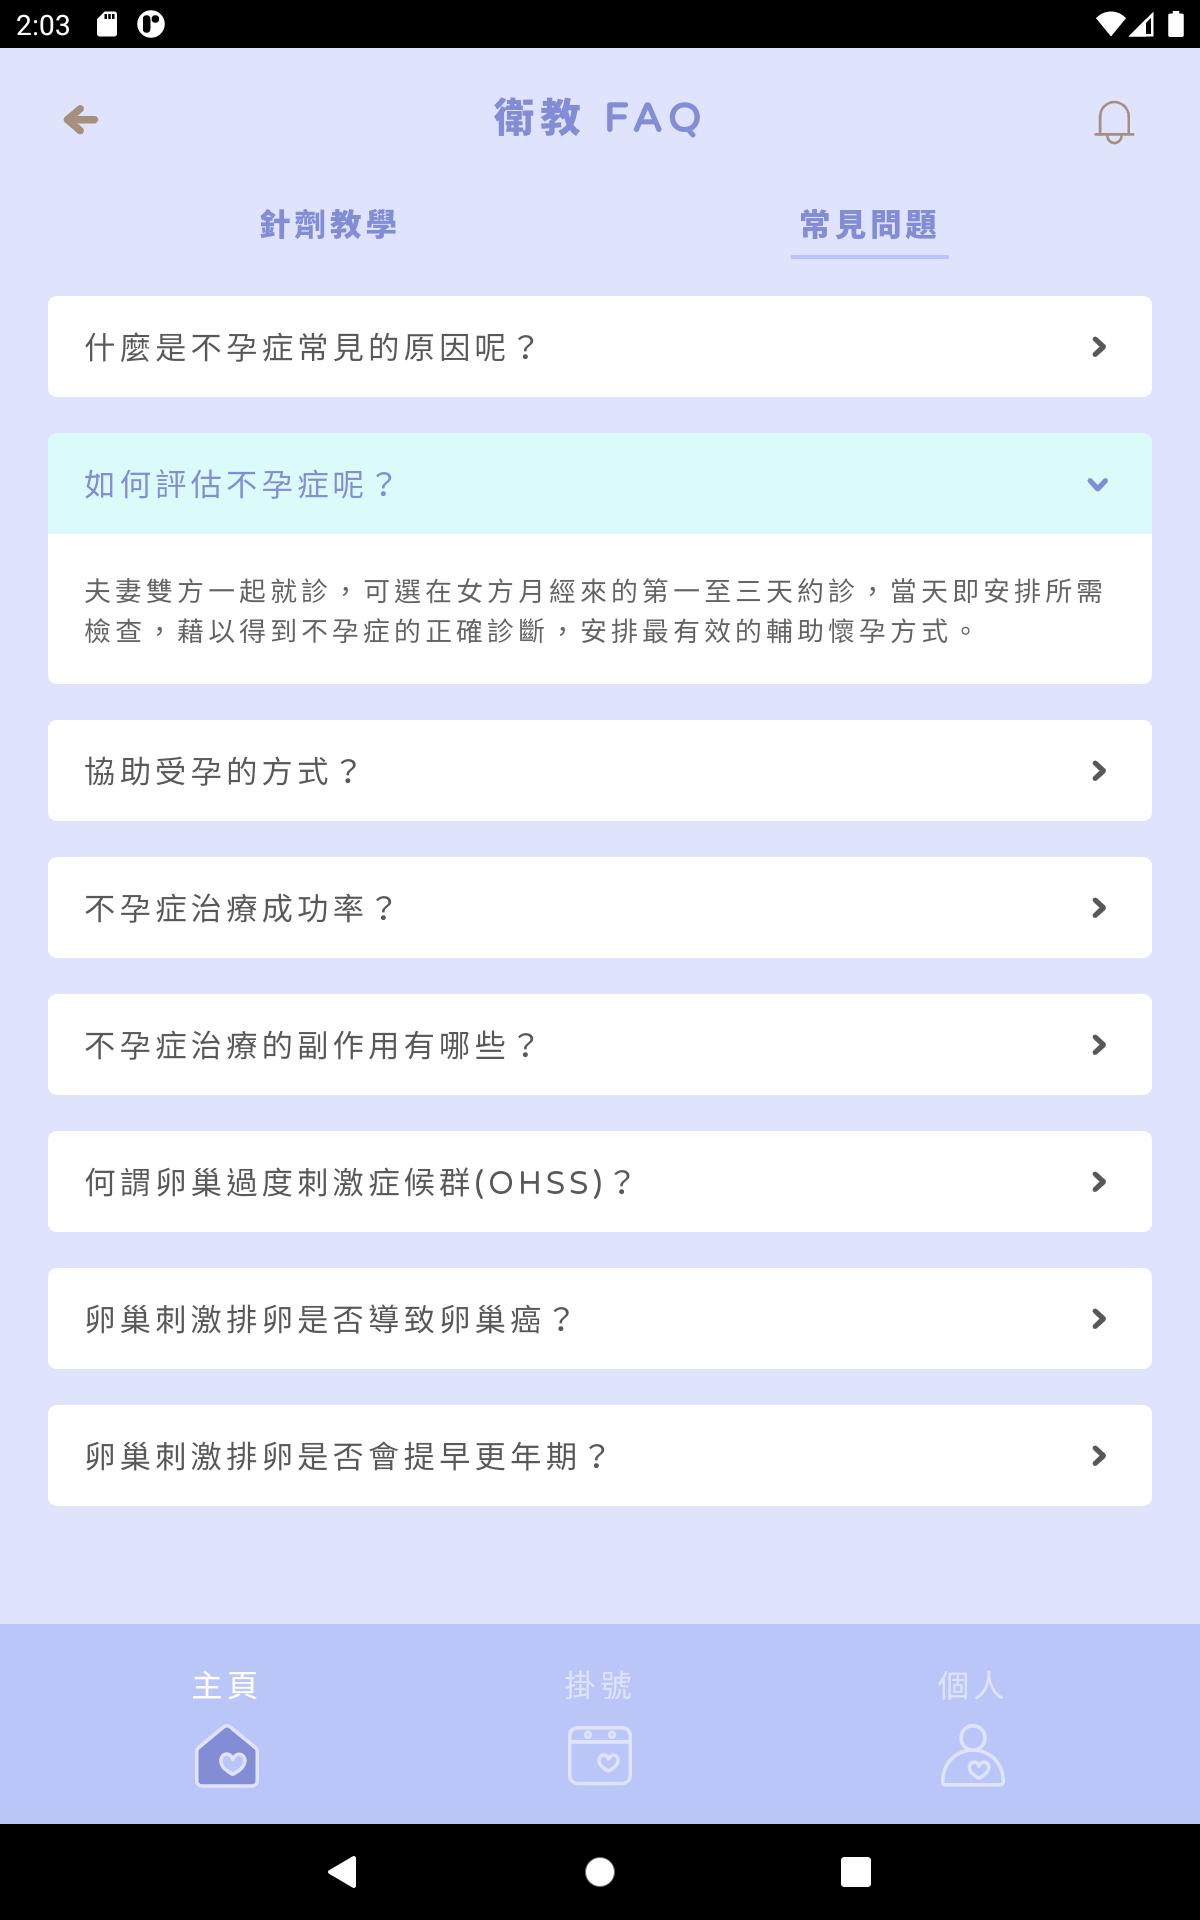 樂芙生殖醫學中心 1.1.0 Screenshot 20